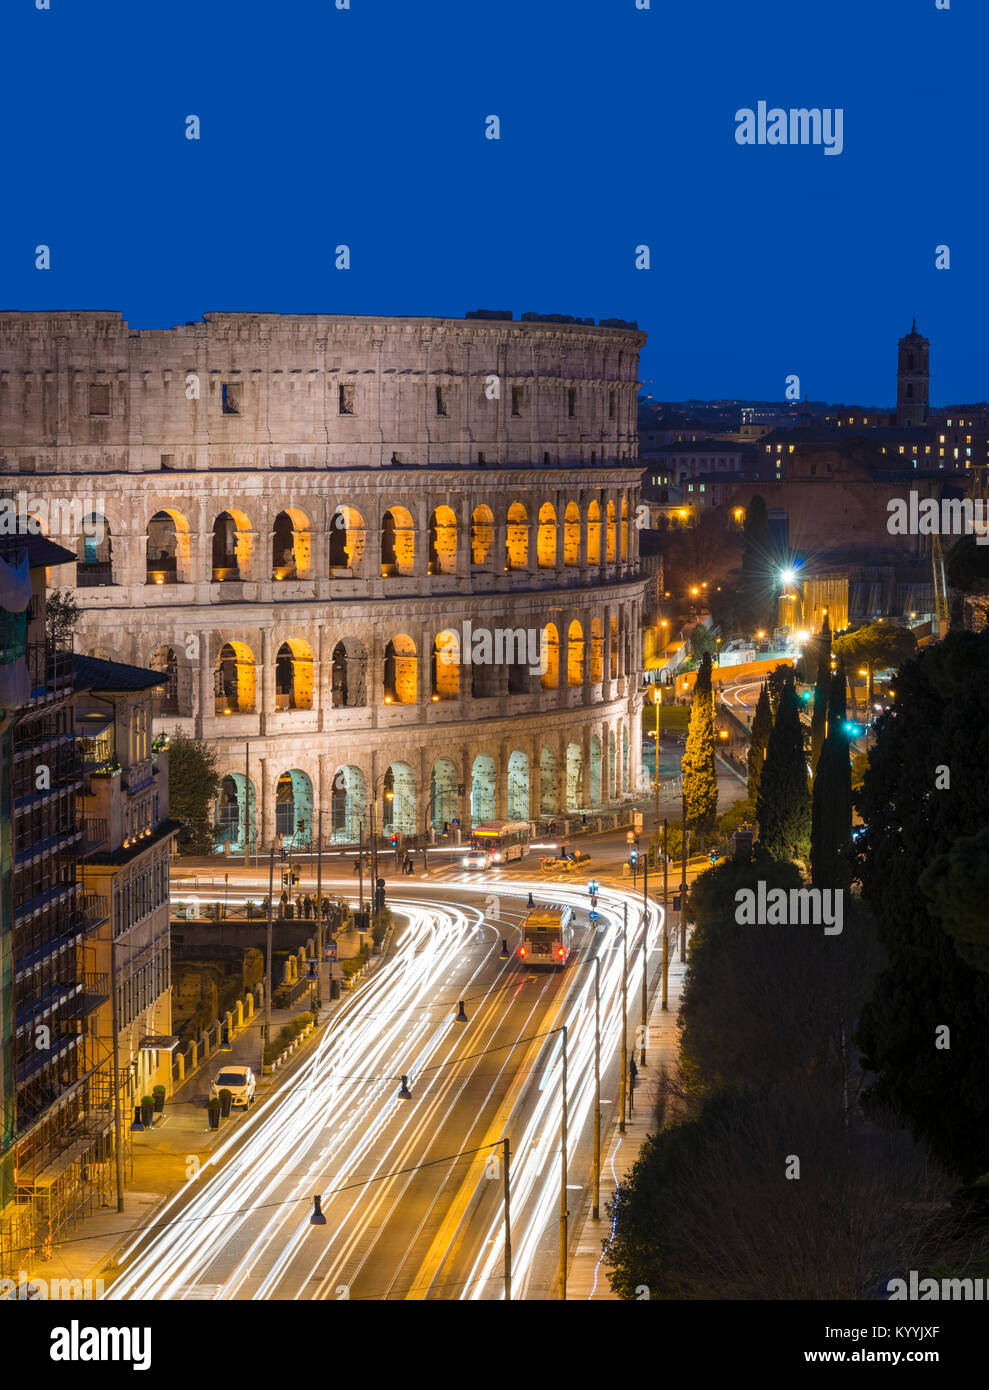 Le Colisée, Rome, Italie la nuit Banque D'Images